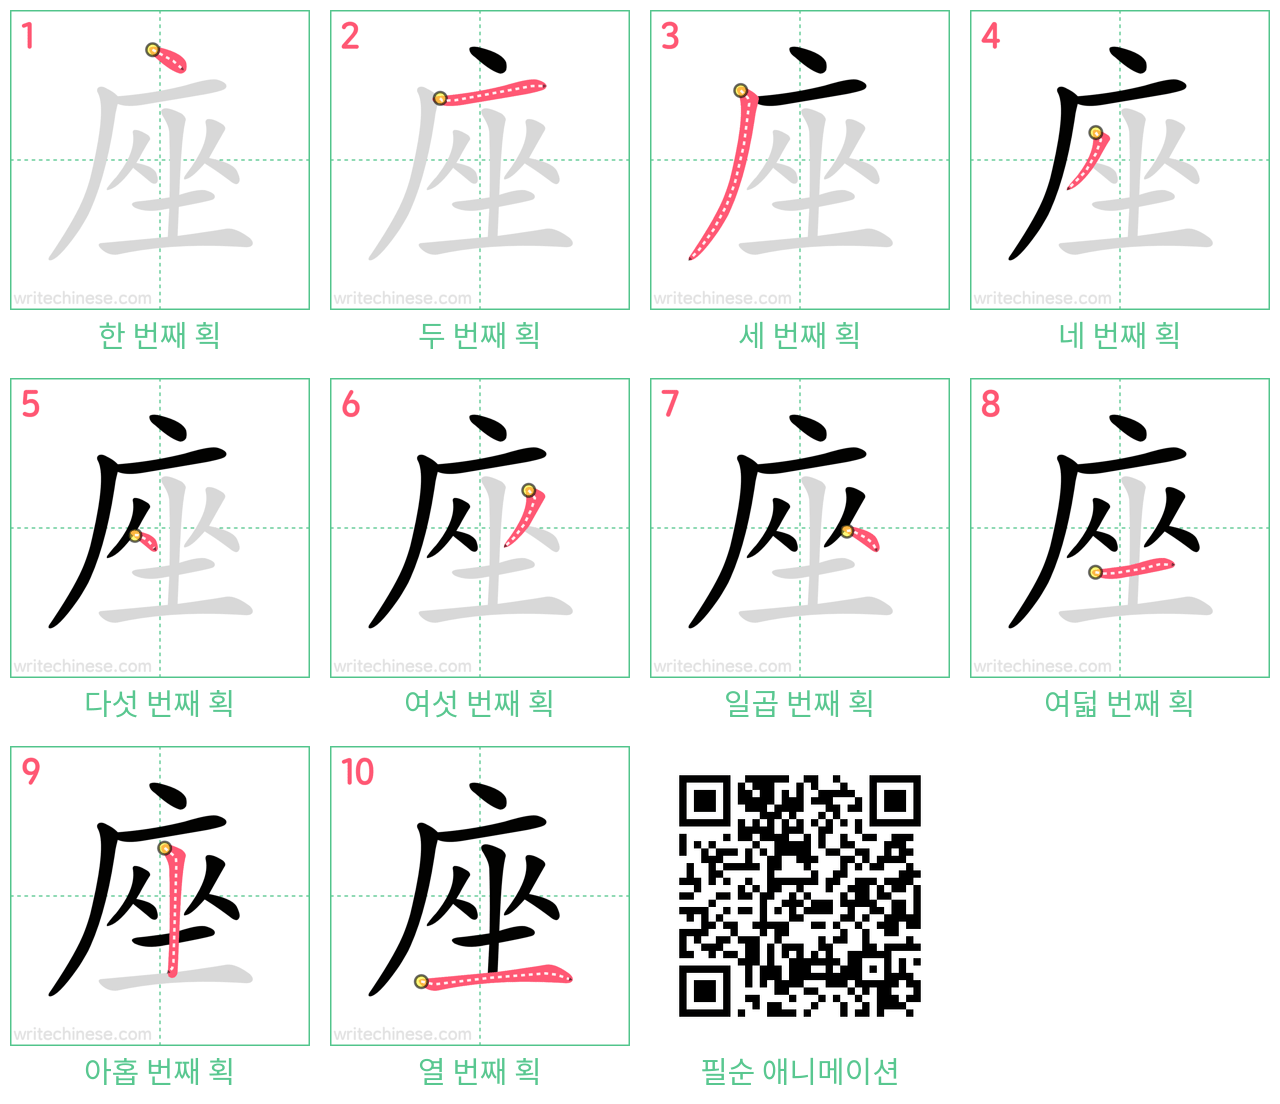 座 step-by-step stroke order diagrams